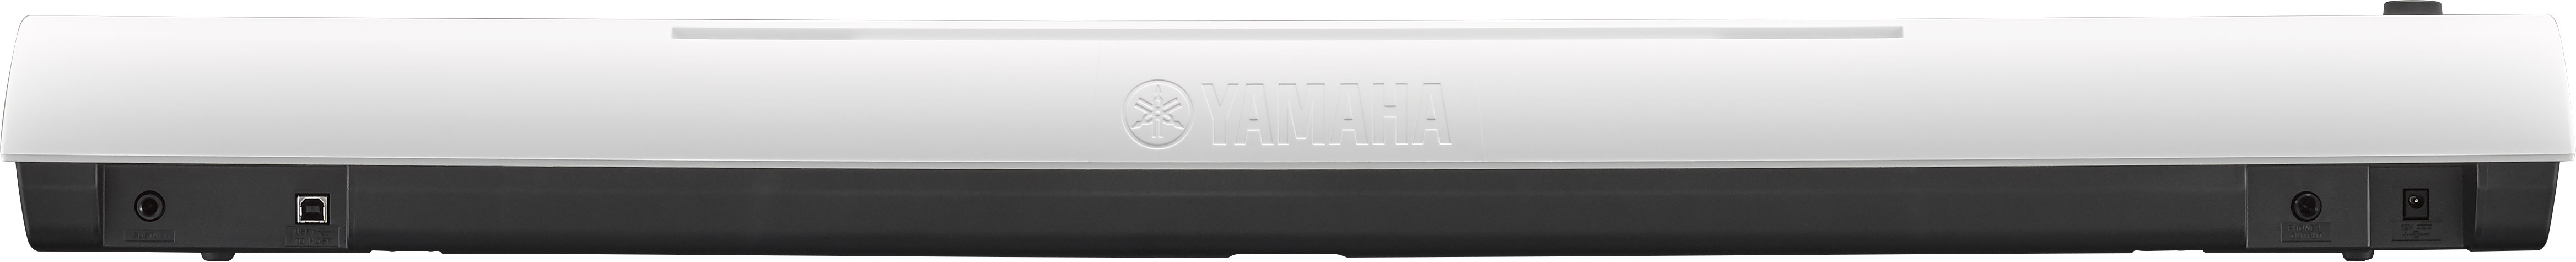 Yamaha Np-12 - White - Piano digital portatil - Variation 2